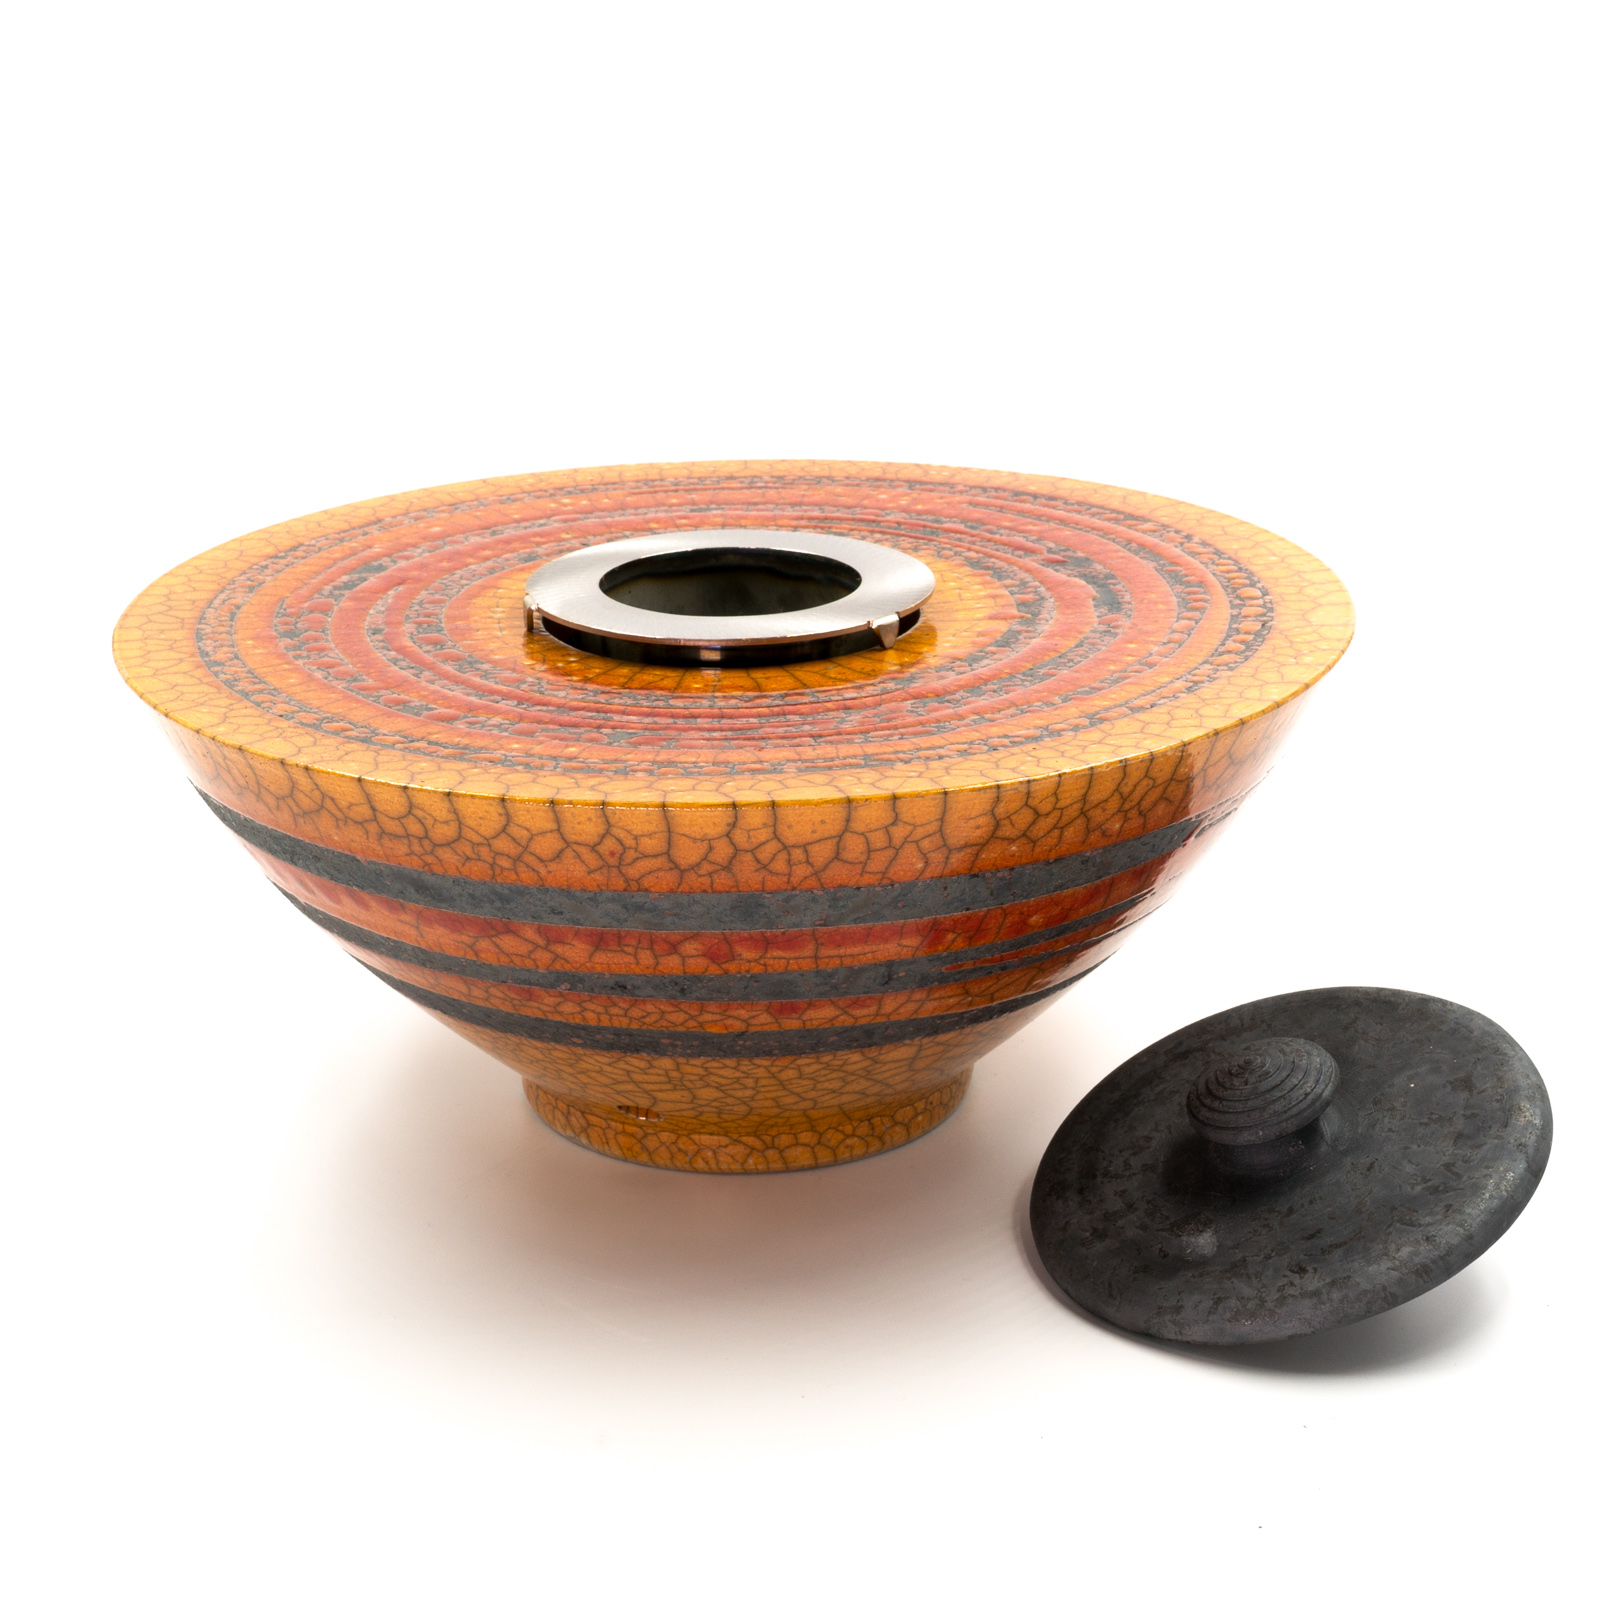 Feuerschale mit Sockel Keramik | Gartenfackel  | Flammschale mit Sockel rot/orange 100cm